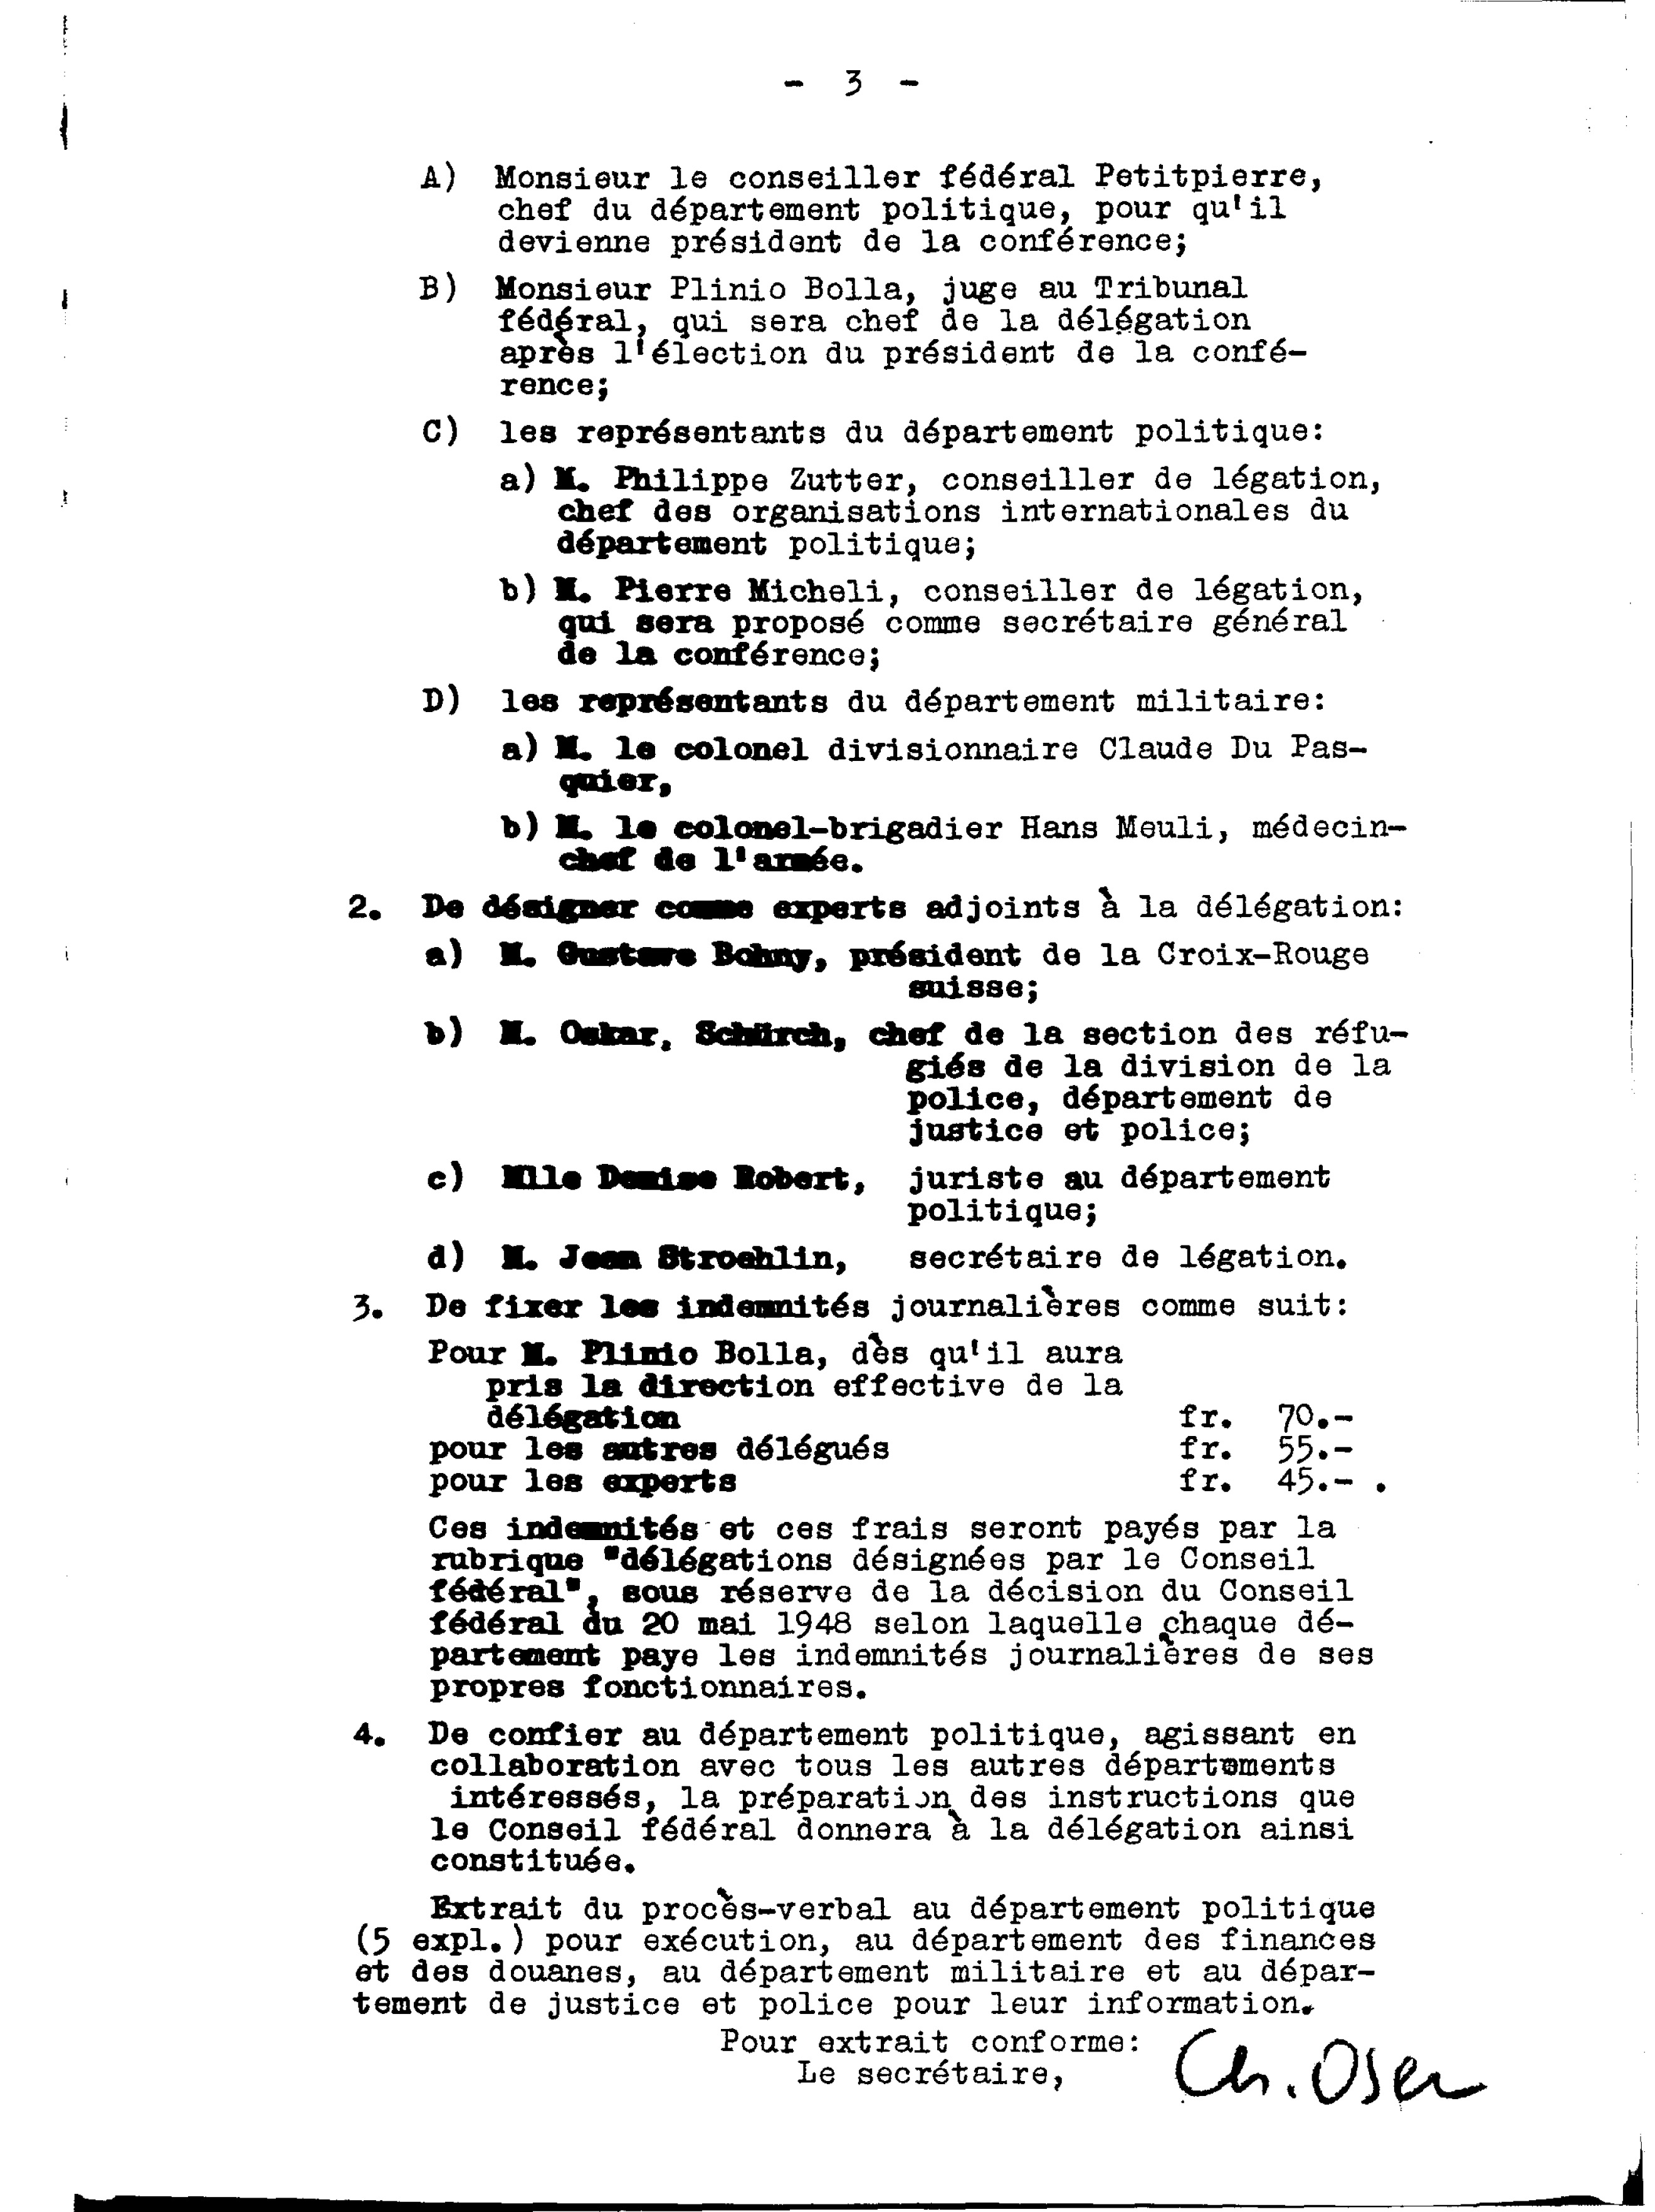 Federal Council decision, 1 April 1949